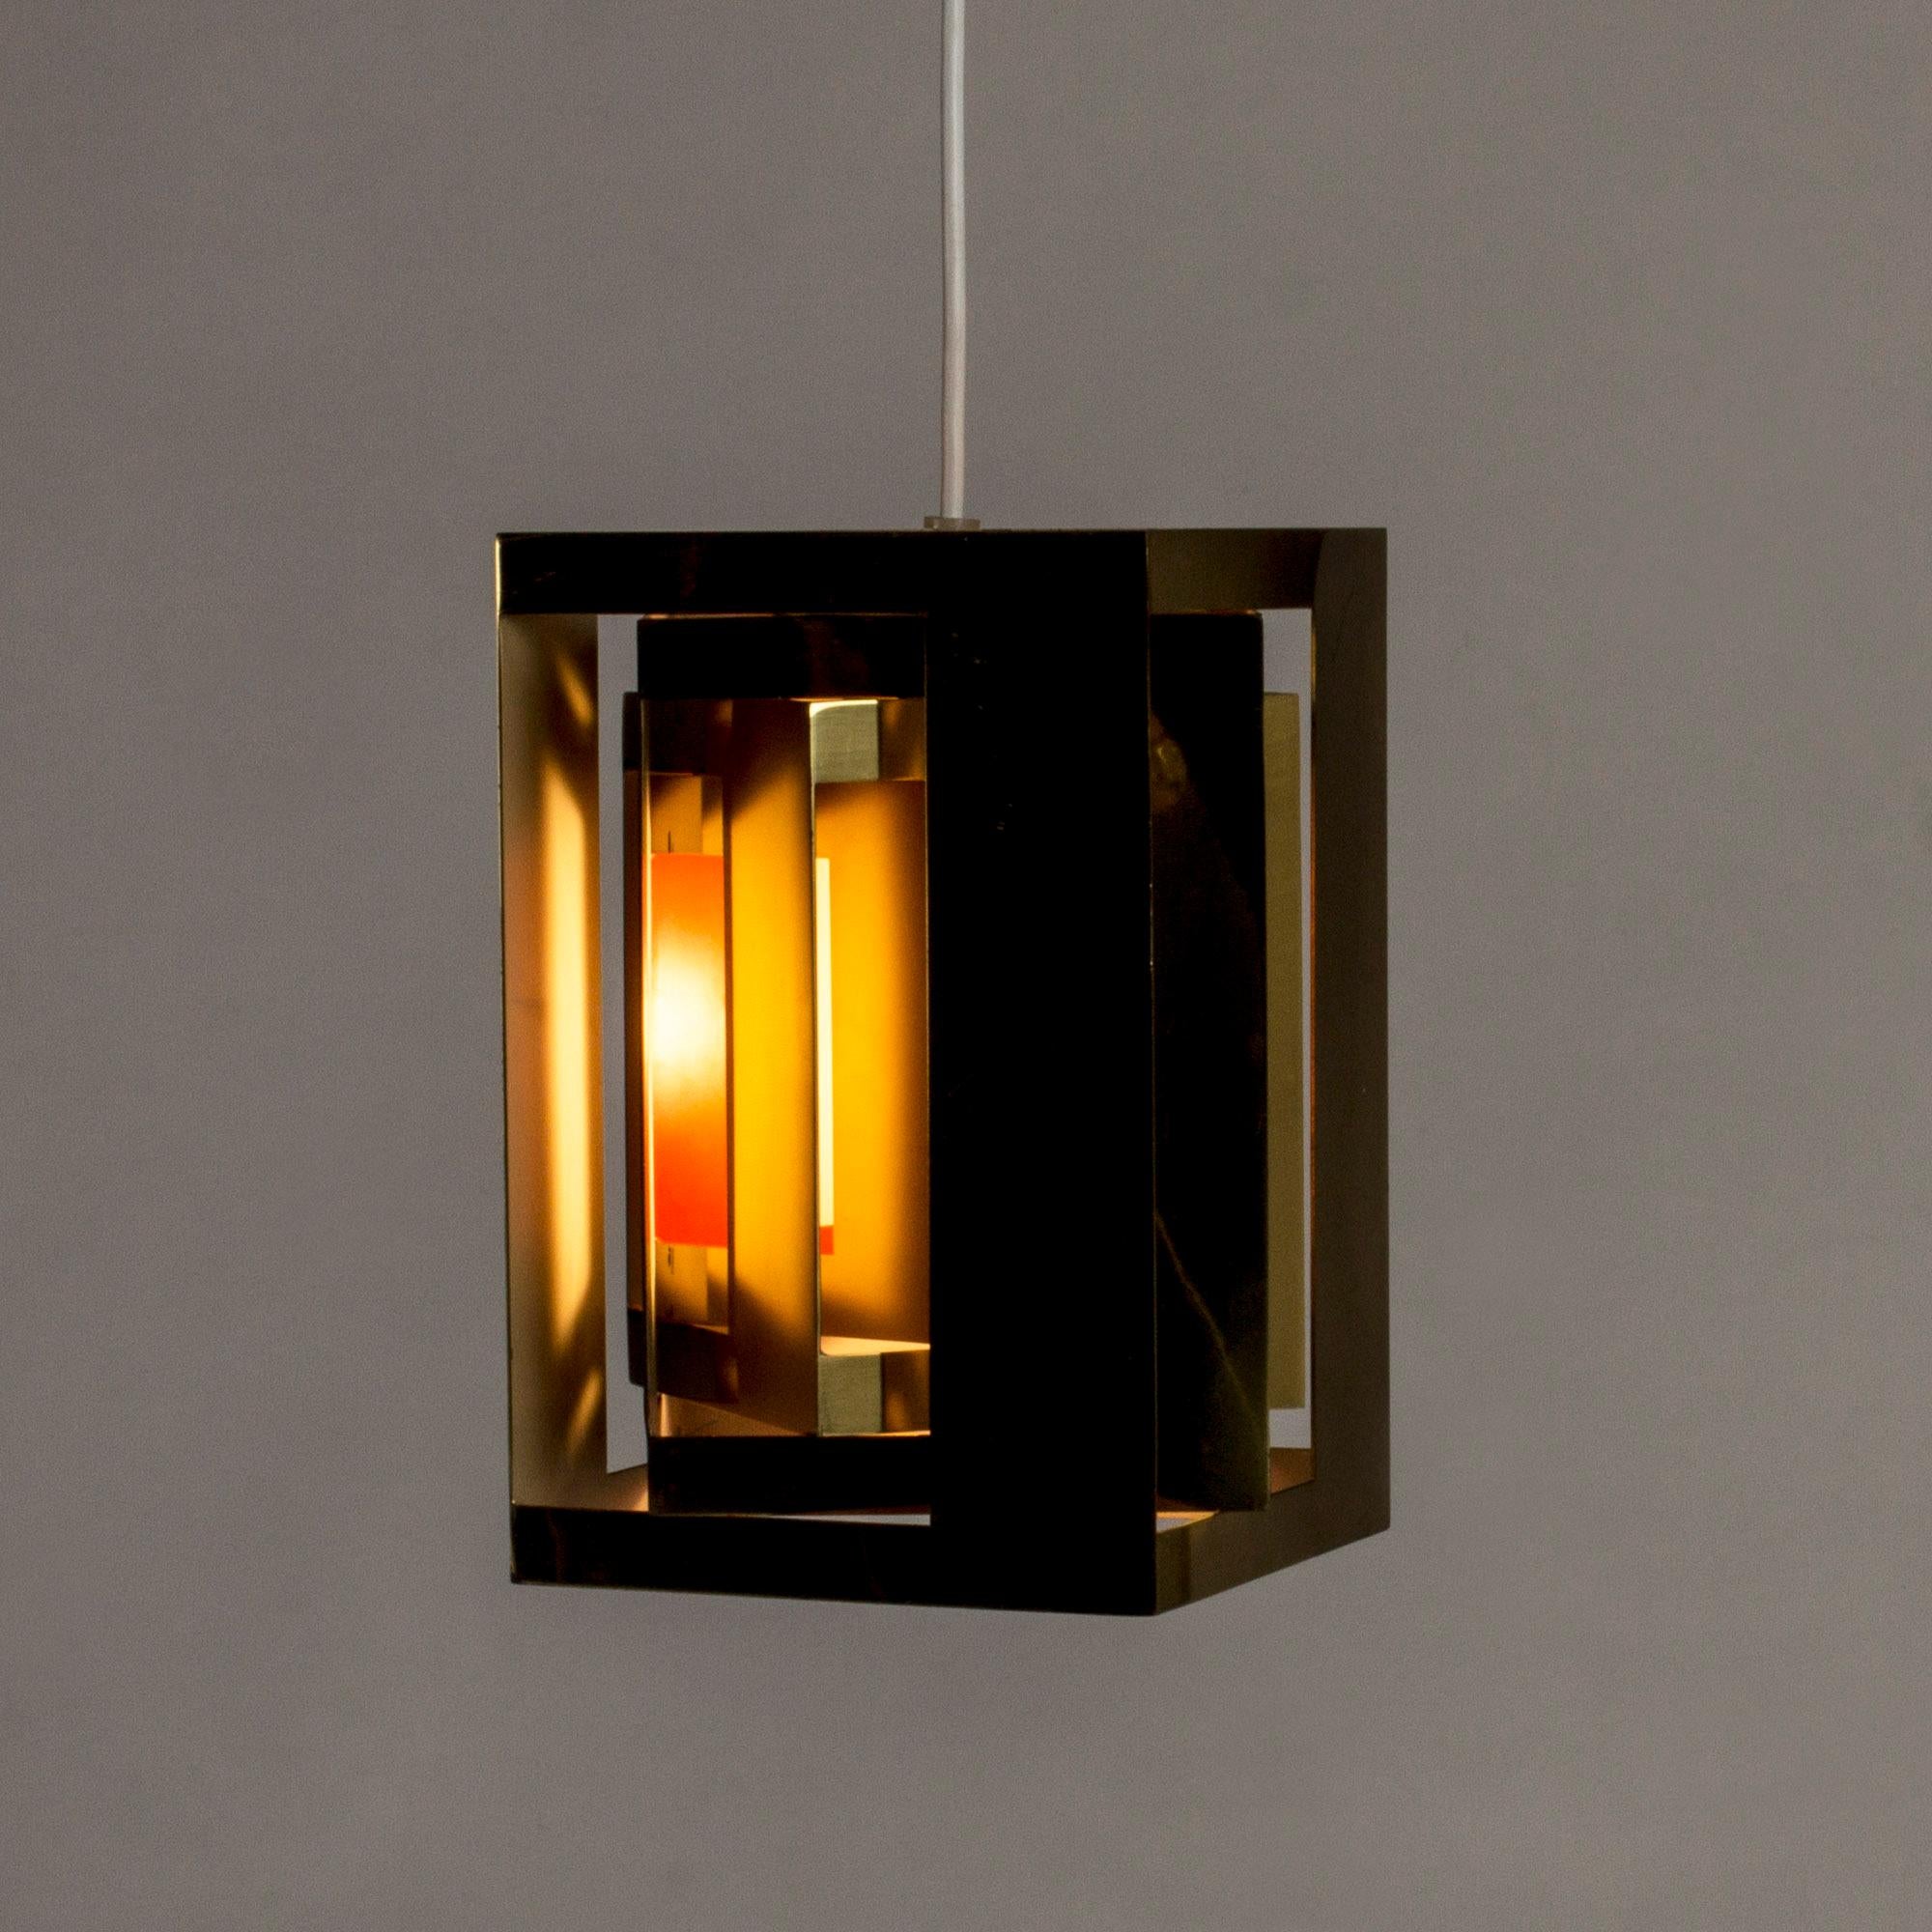 Danish “Kassablanka” Pendant Lamp by Simon Henningsen